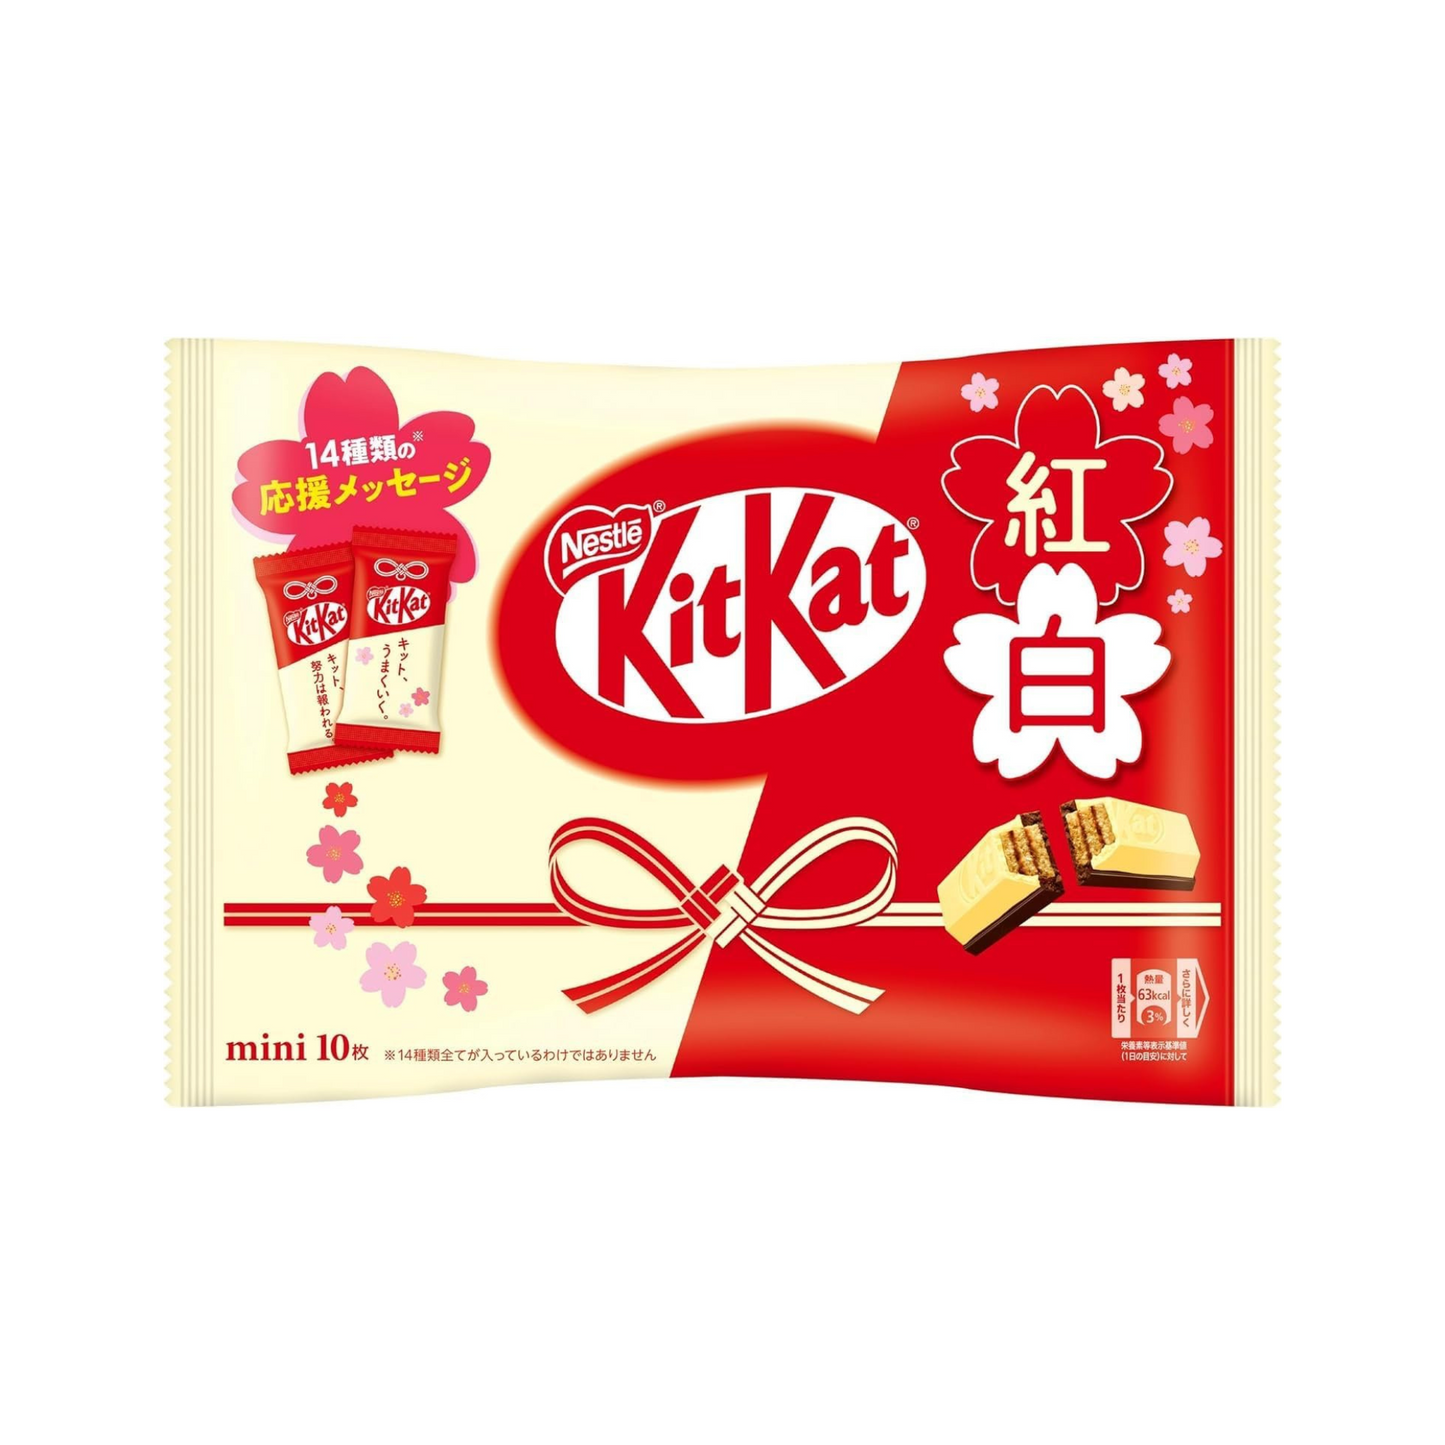 Kit Kat 2 chocolaatjes (met berichten)